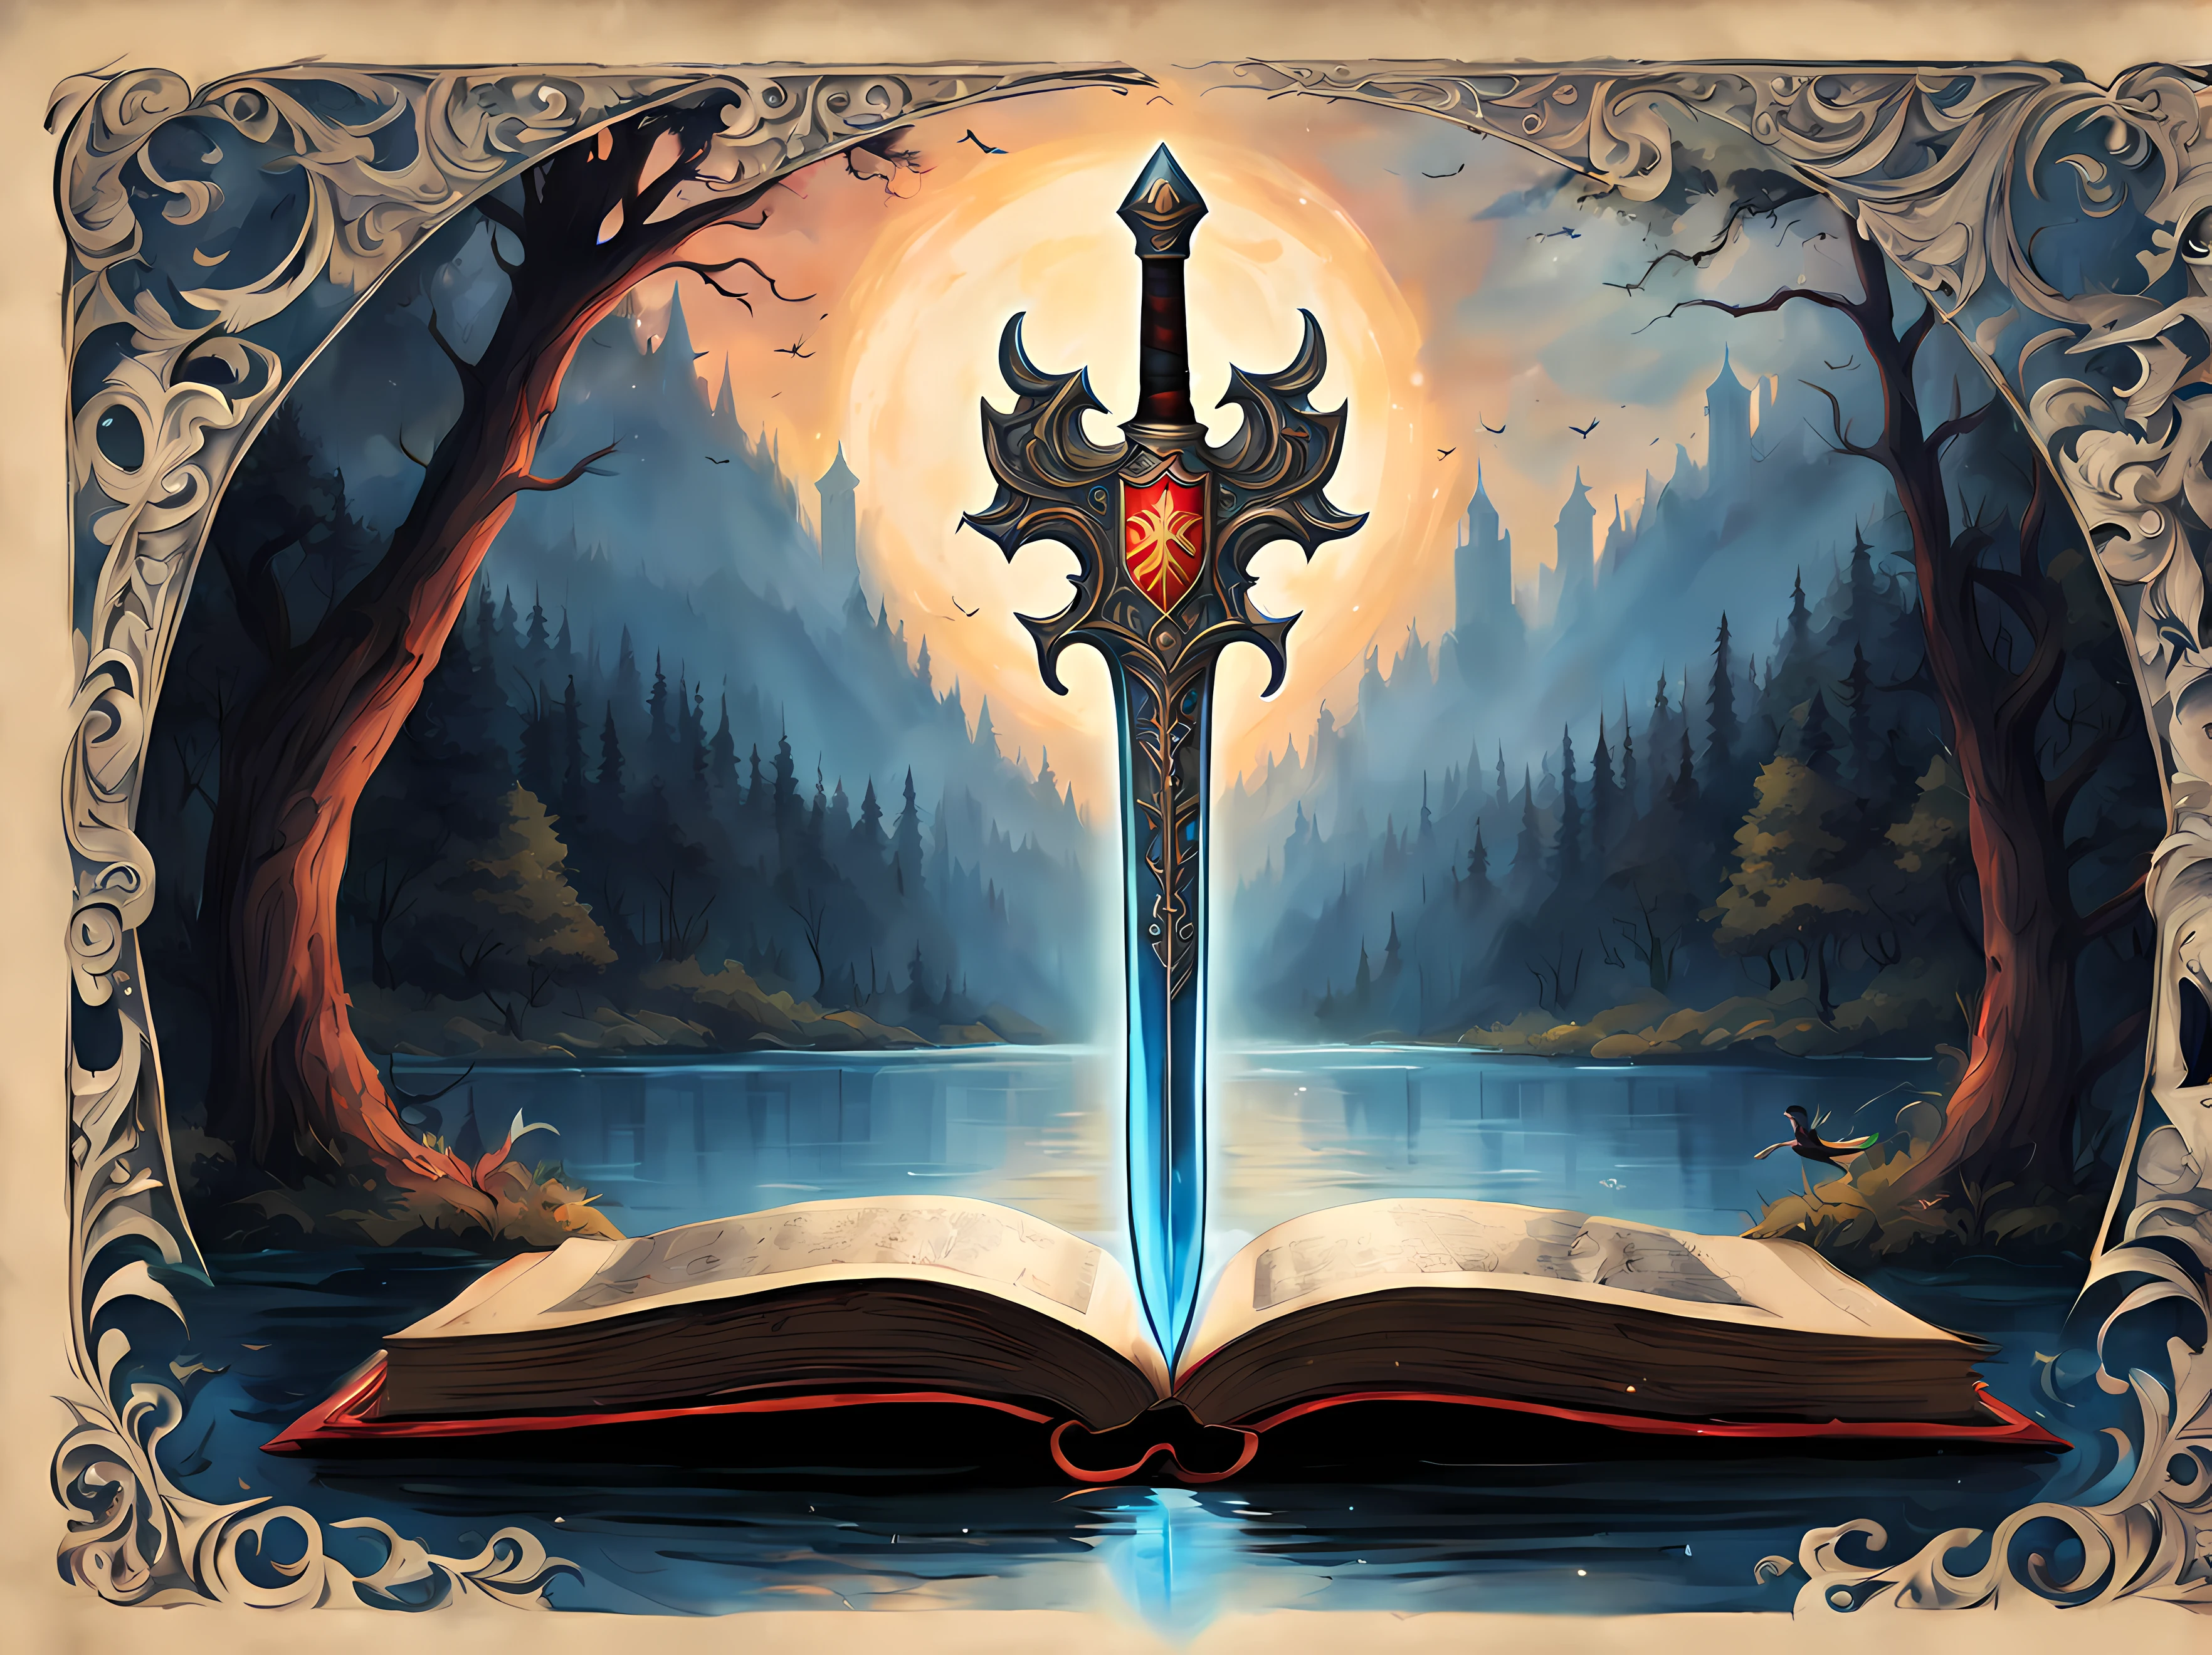 dessin animé mignon, MignonDessin AniméAF, (Style de dessin animé mignon:1.3), (sur une page de livre ancien avec des ornements gothiques:1.3). | ((vue lointaine de l&#39;épée légendaire et du bouclier flottant)) au dessus d&#39;un lac, entouré d&#39;une grande forêt. | L&#39;épée a une aura divine captivante, brillant d&#39;une douce lumière bleue. | ((Le bouclier a une image de phénix)), brillant d&#39;une douce lumière rouge. | Plus_détail